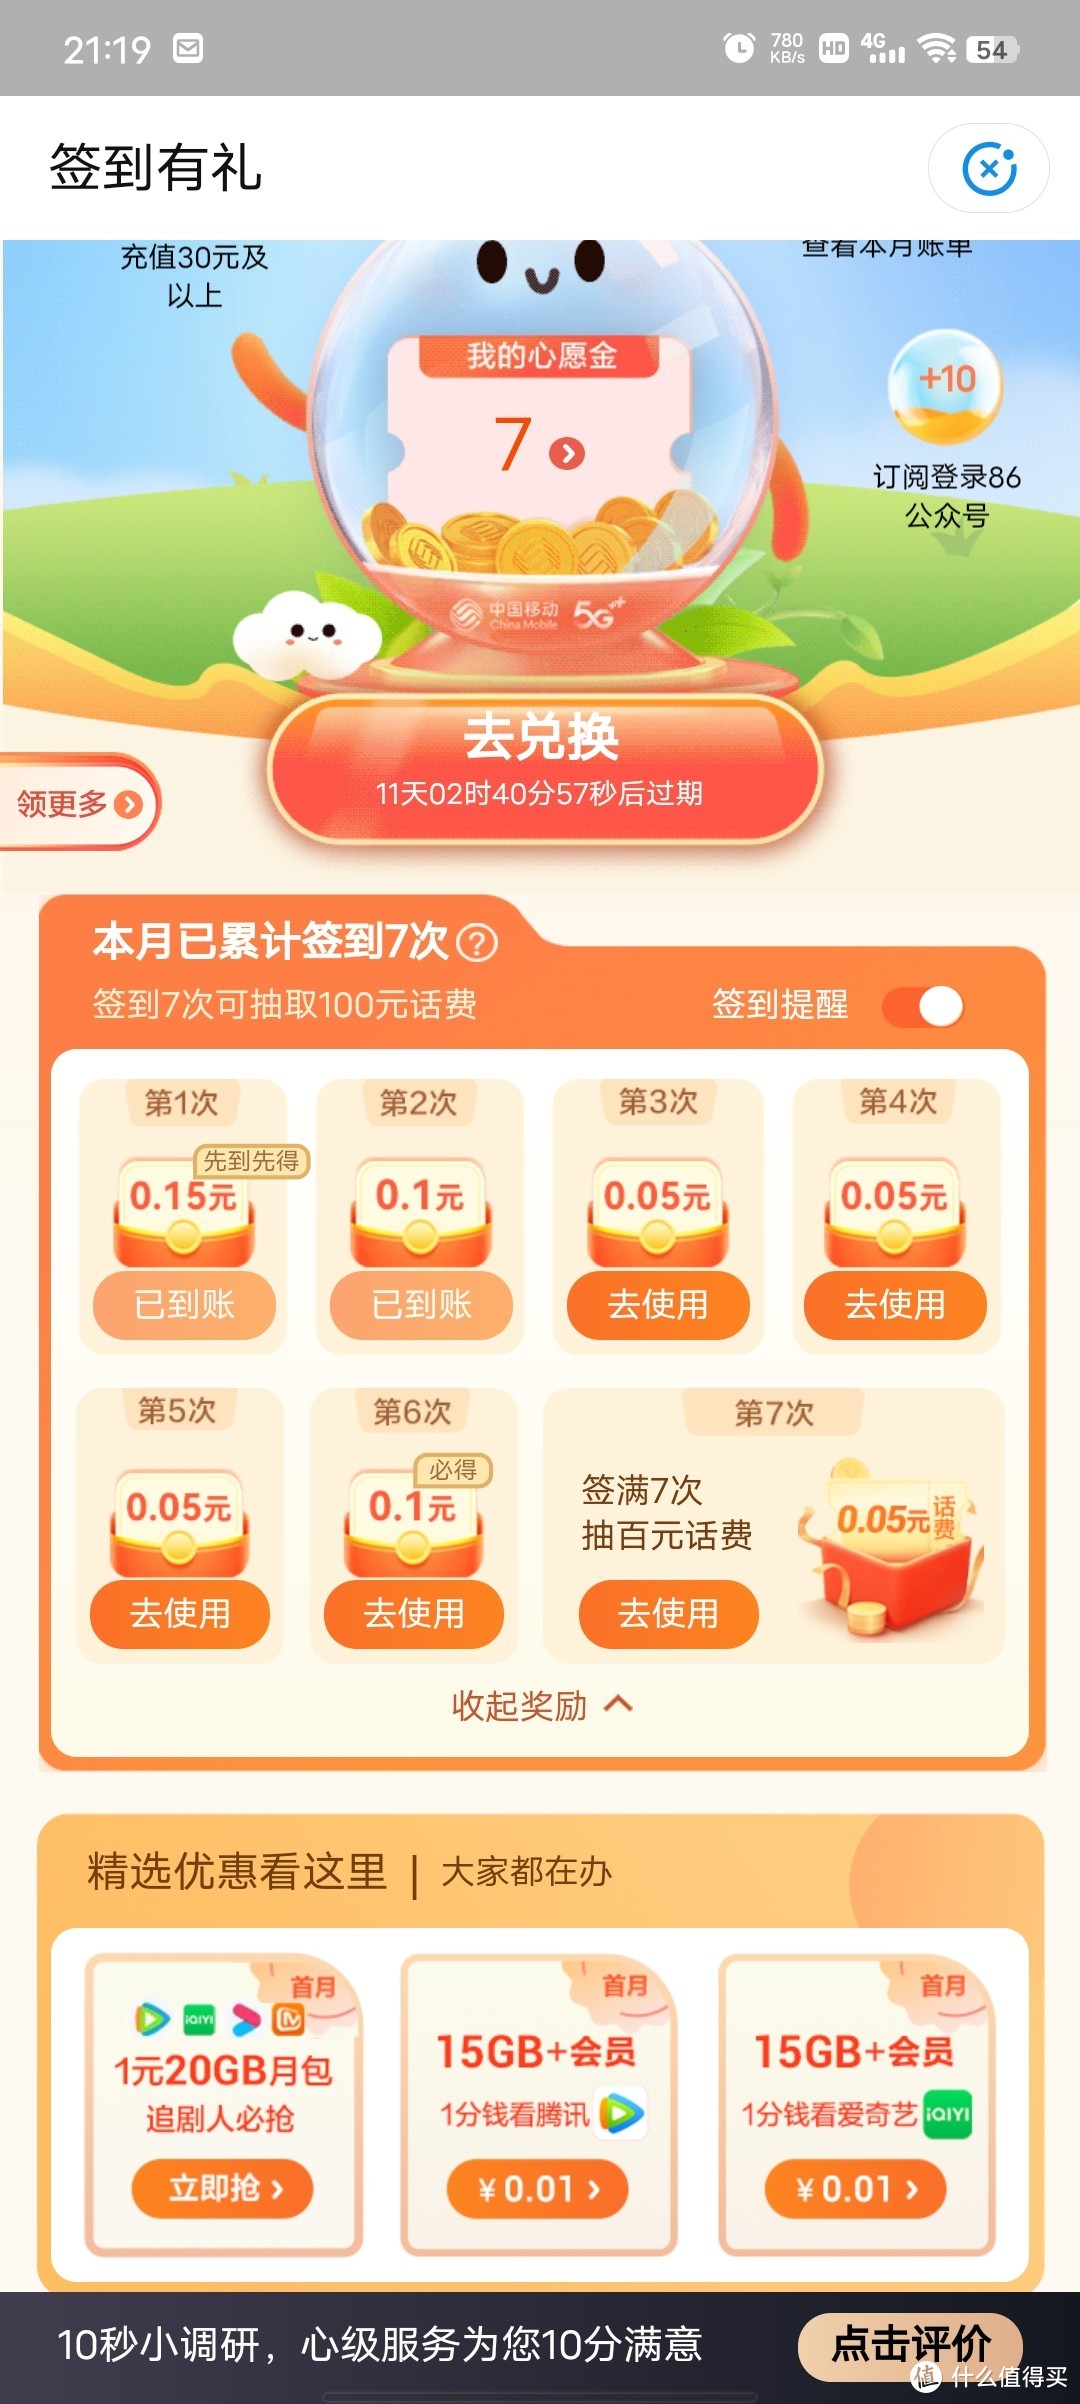 中国移动app每月签到可领小额话费